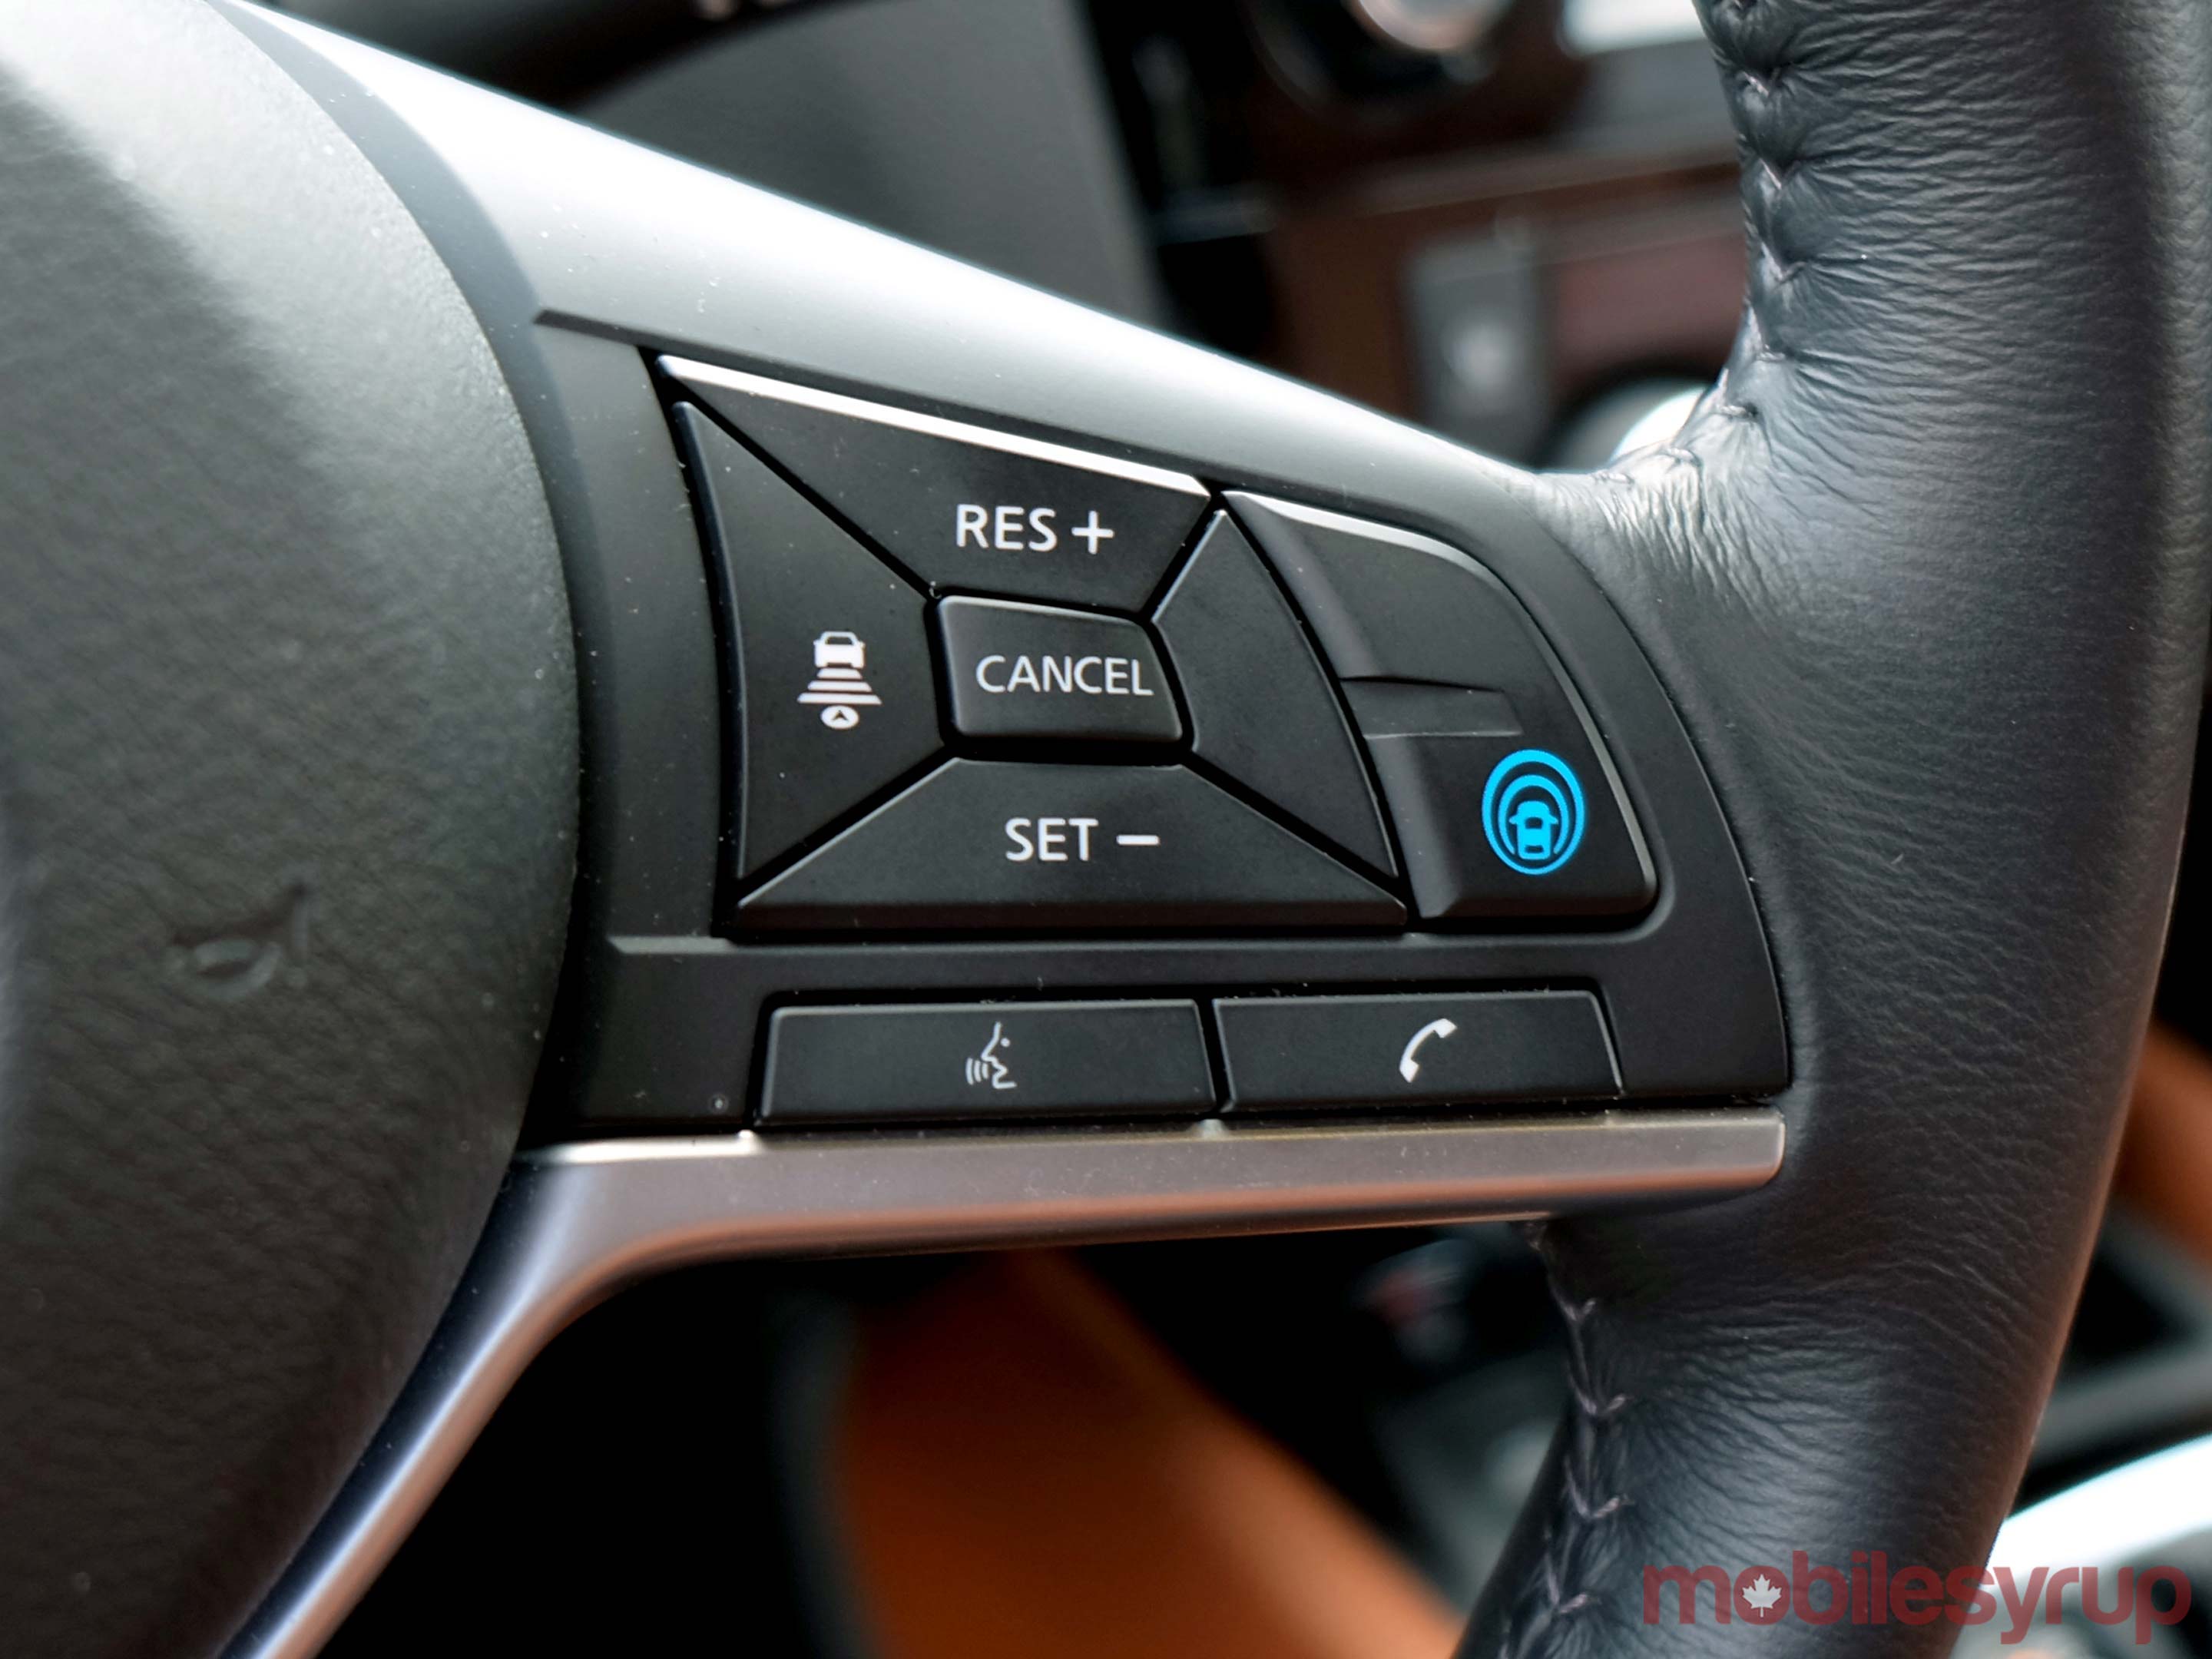 Nissan ProPilot steering wheel controls